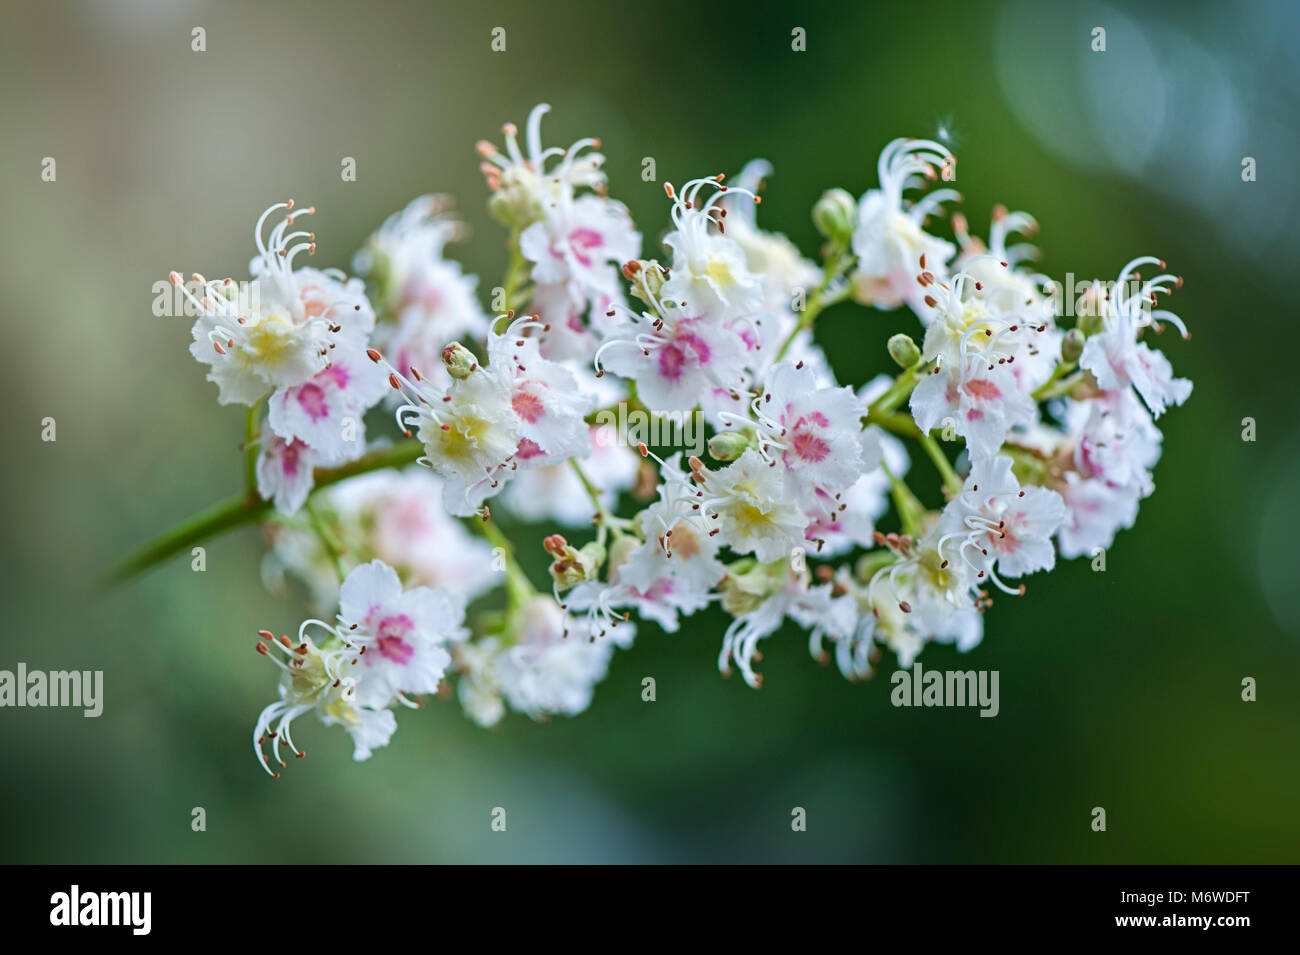 Nah-, Makro Bild des großen weißen Blüten der Europäischen Rosskastanie Baum auch bekannt als Roßkastanie, conker Baum und Aesculus hippocastanum Stockfoto